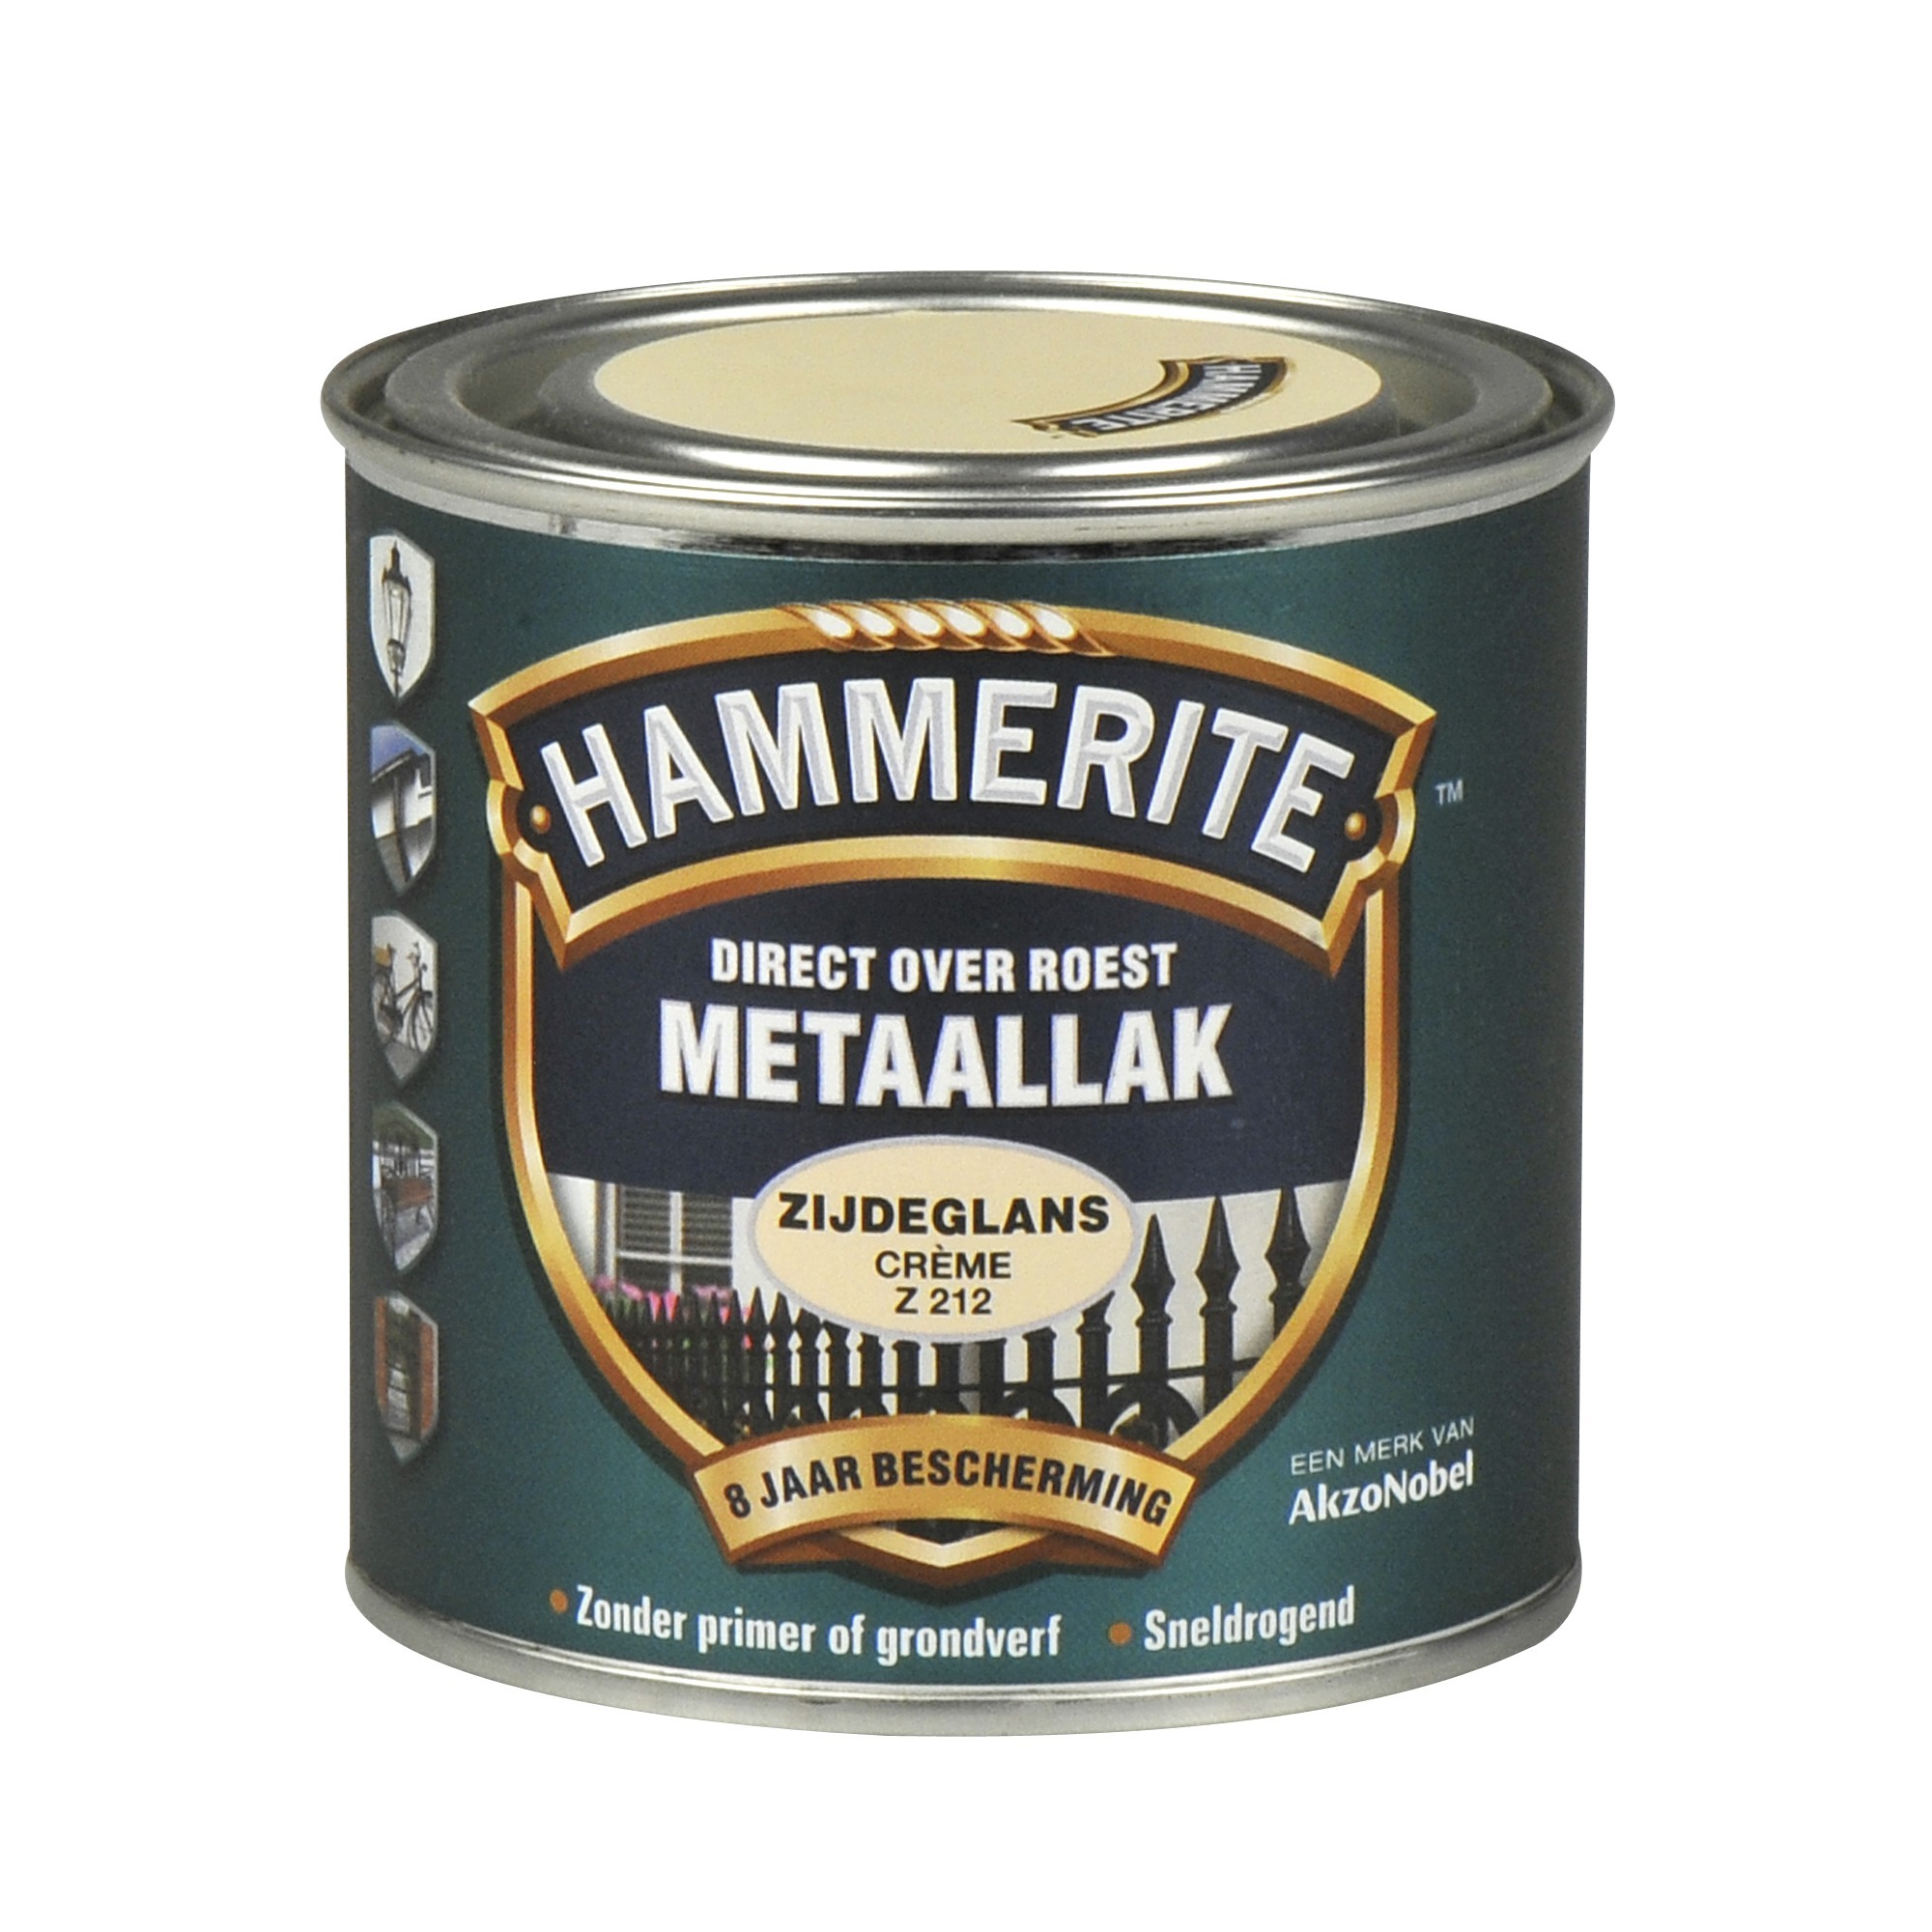 Hammerite direct over roest metaallak zijdeglans crème - 250 ml